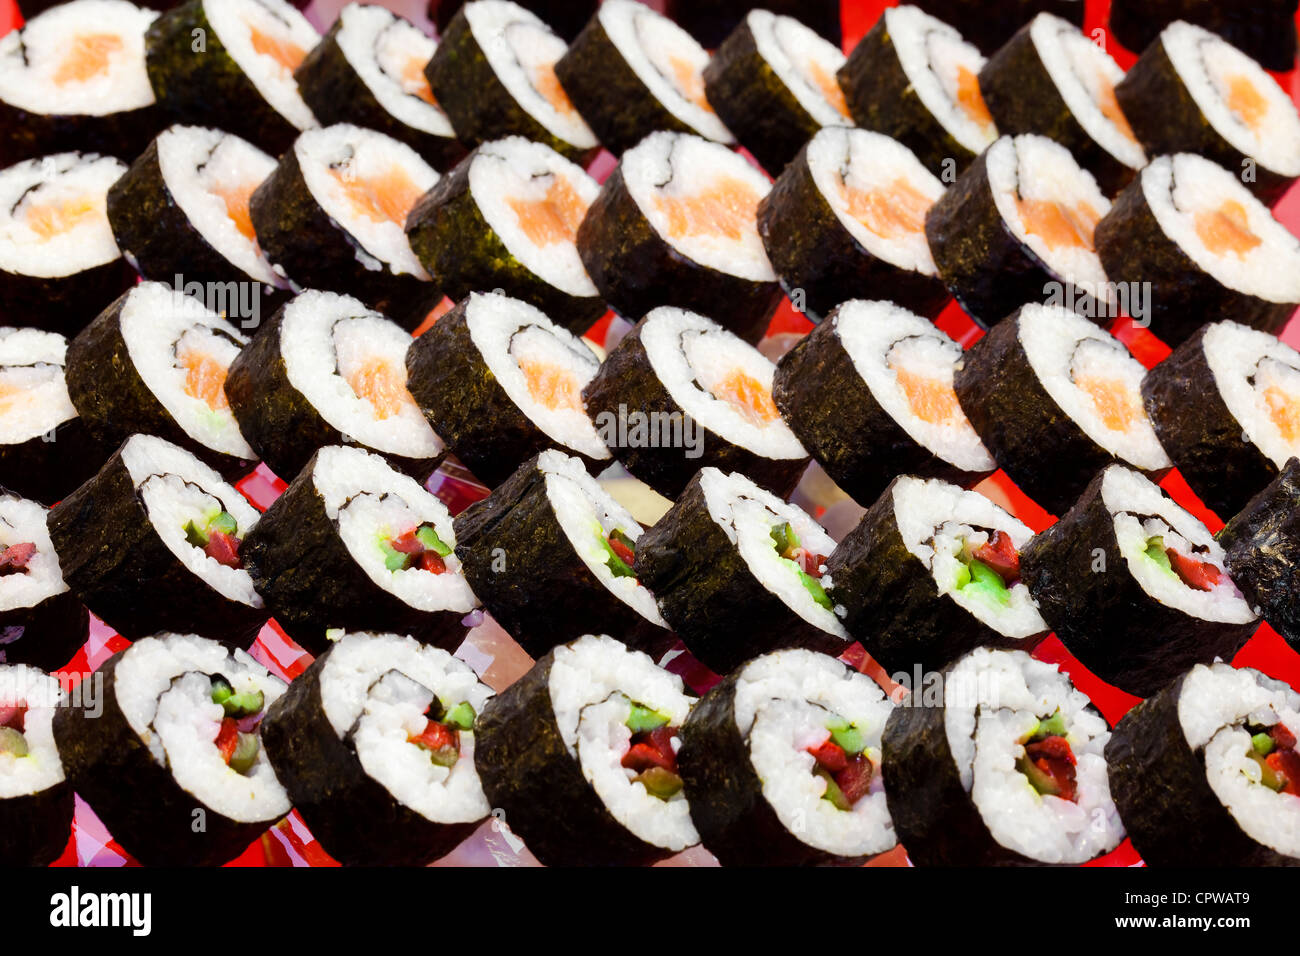 Cocina tradicional japonesa- rollos de sushi servido en una fiesta Foto de stock